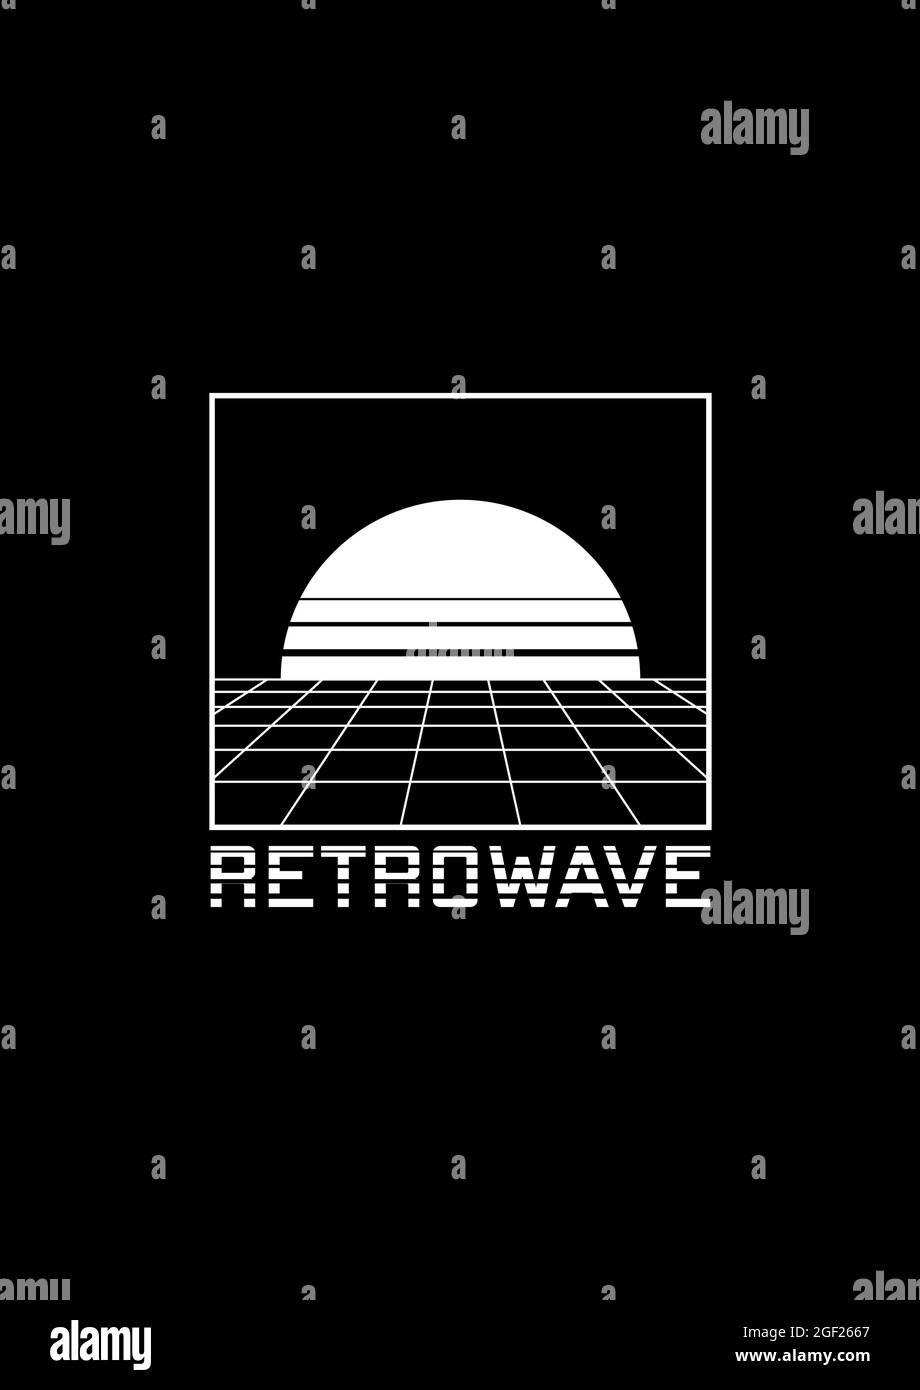 T-shirt Retrowave e design di abbigliamento con griglia prospettica, sole all'orizzonte e titolo a righe RETROWAVE. L'estetica degli anni '80. Bianco e nero Illustrazione Vettoriale